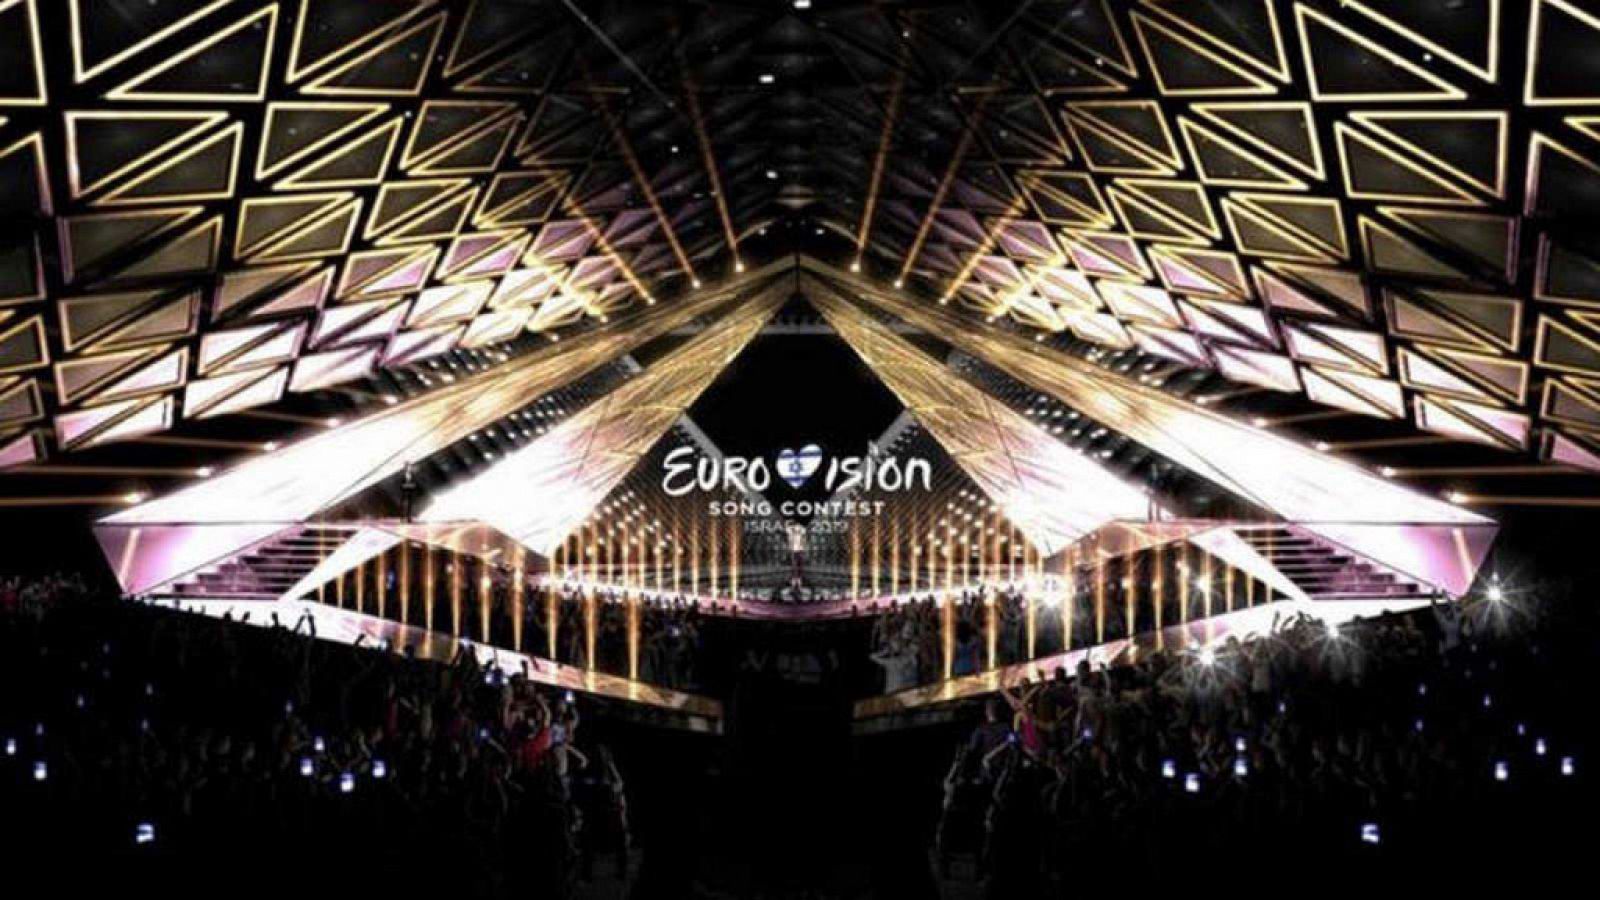 Universo Eurovisión - La evolución de la escenografía en Eurovisión - Escuchar ahora